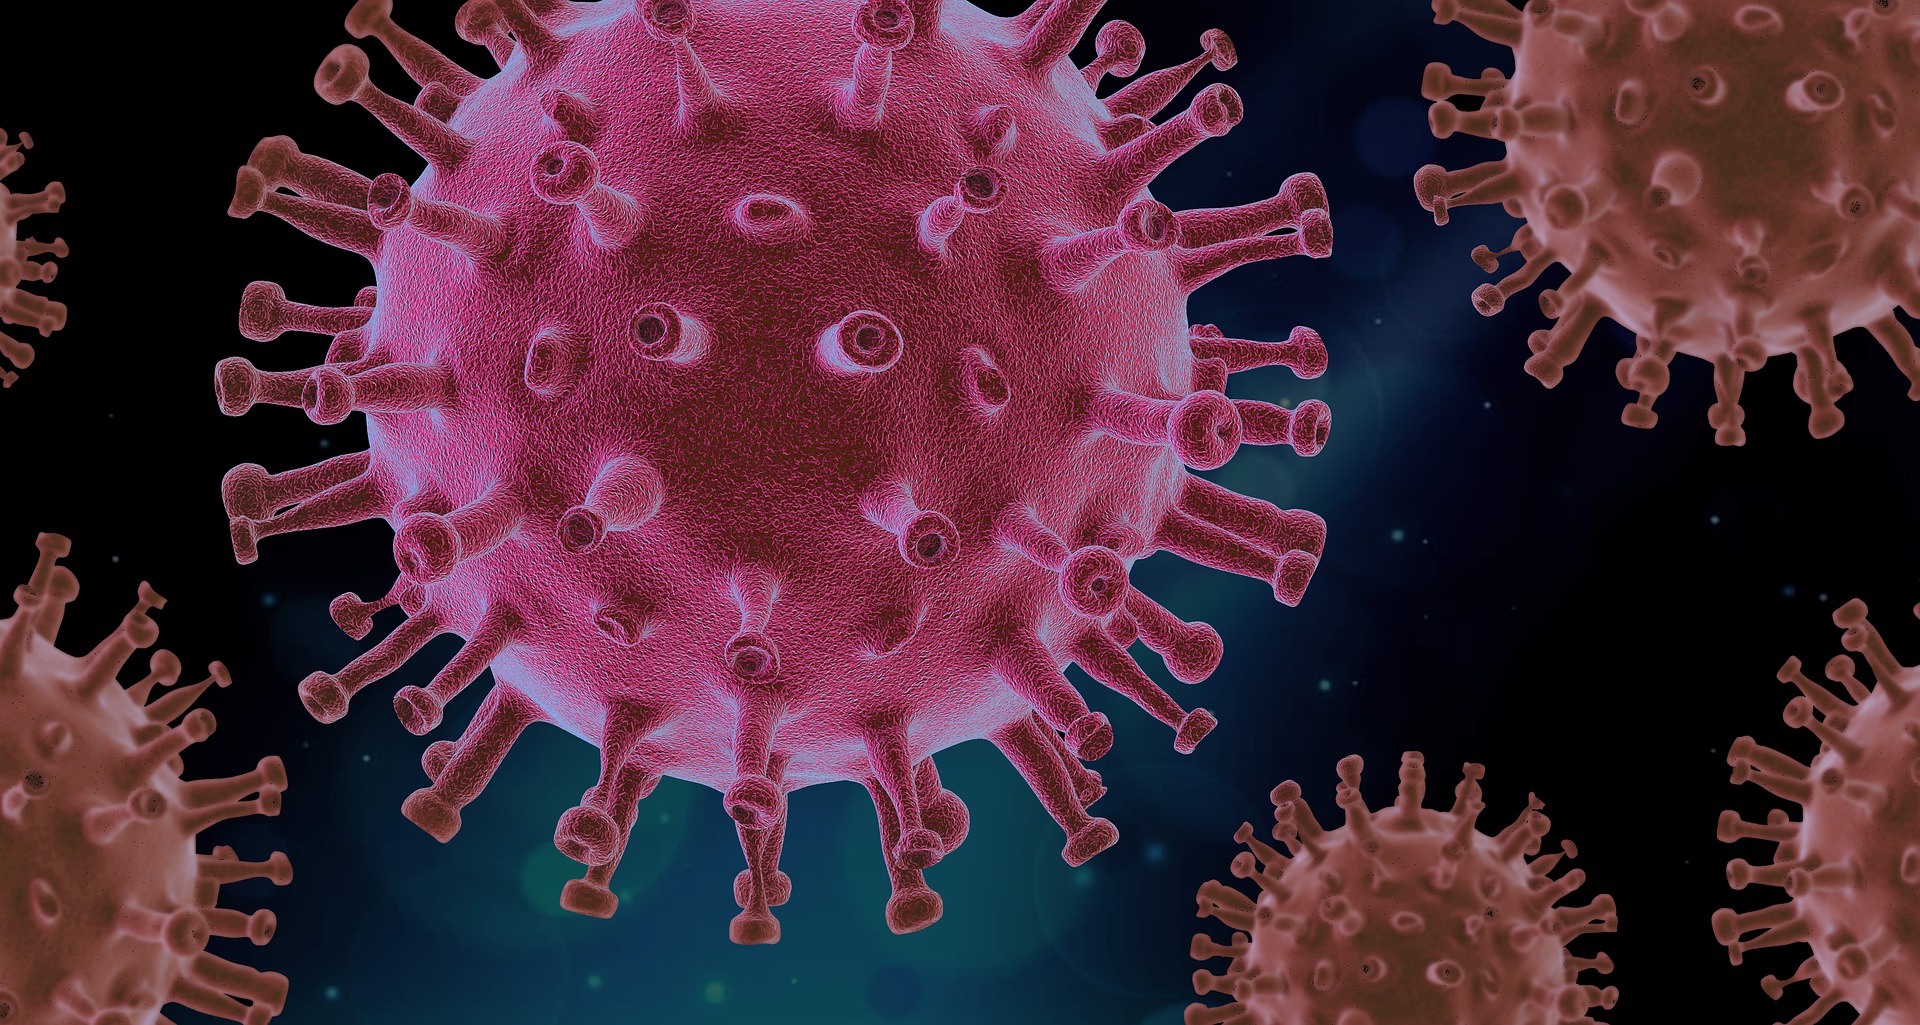 Nuovo test per la rilevazione di immunità cellulare specifica per il Sars-Cov-2